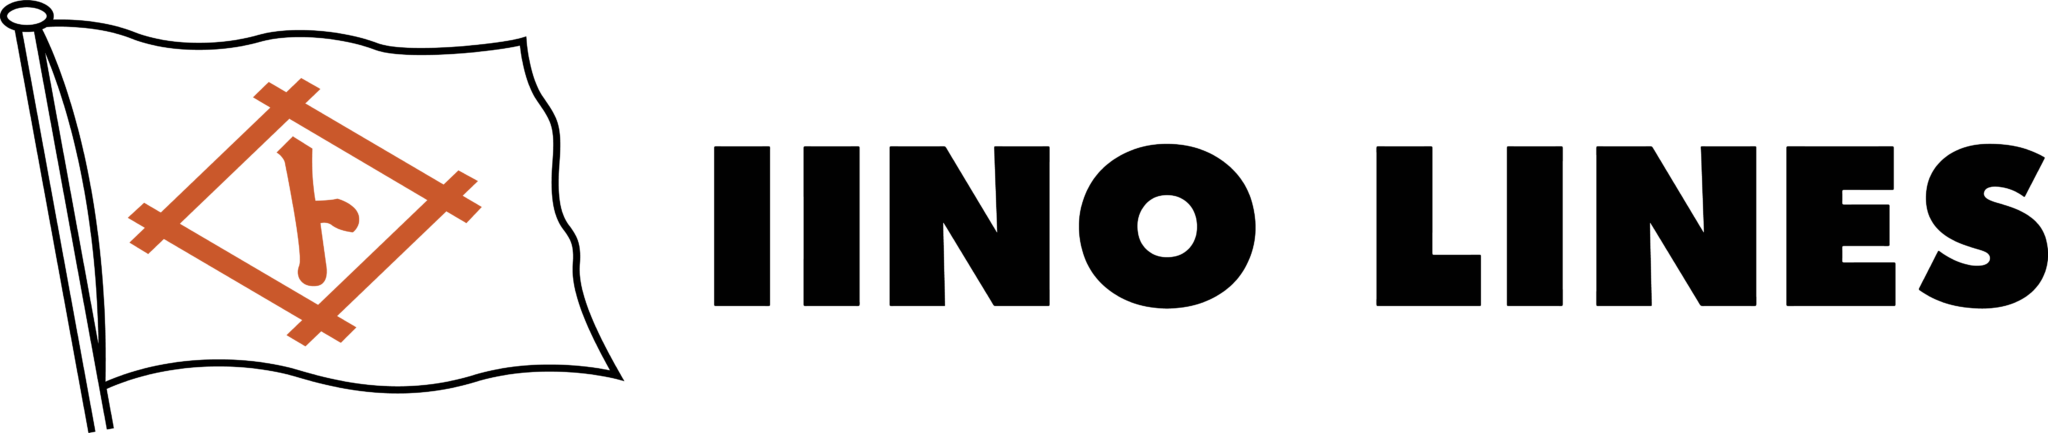 Iino Lines Logo English 2048x433 1